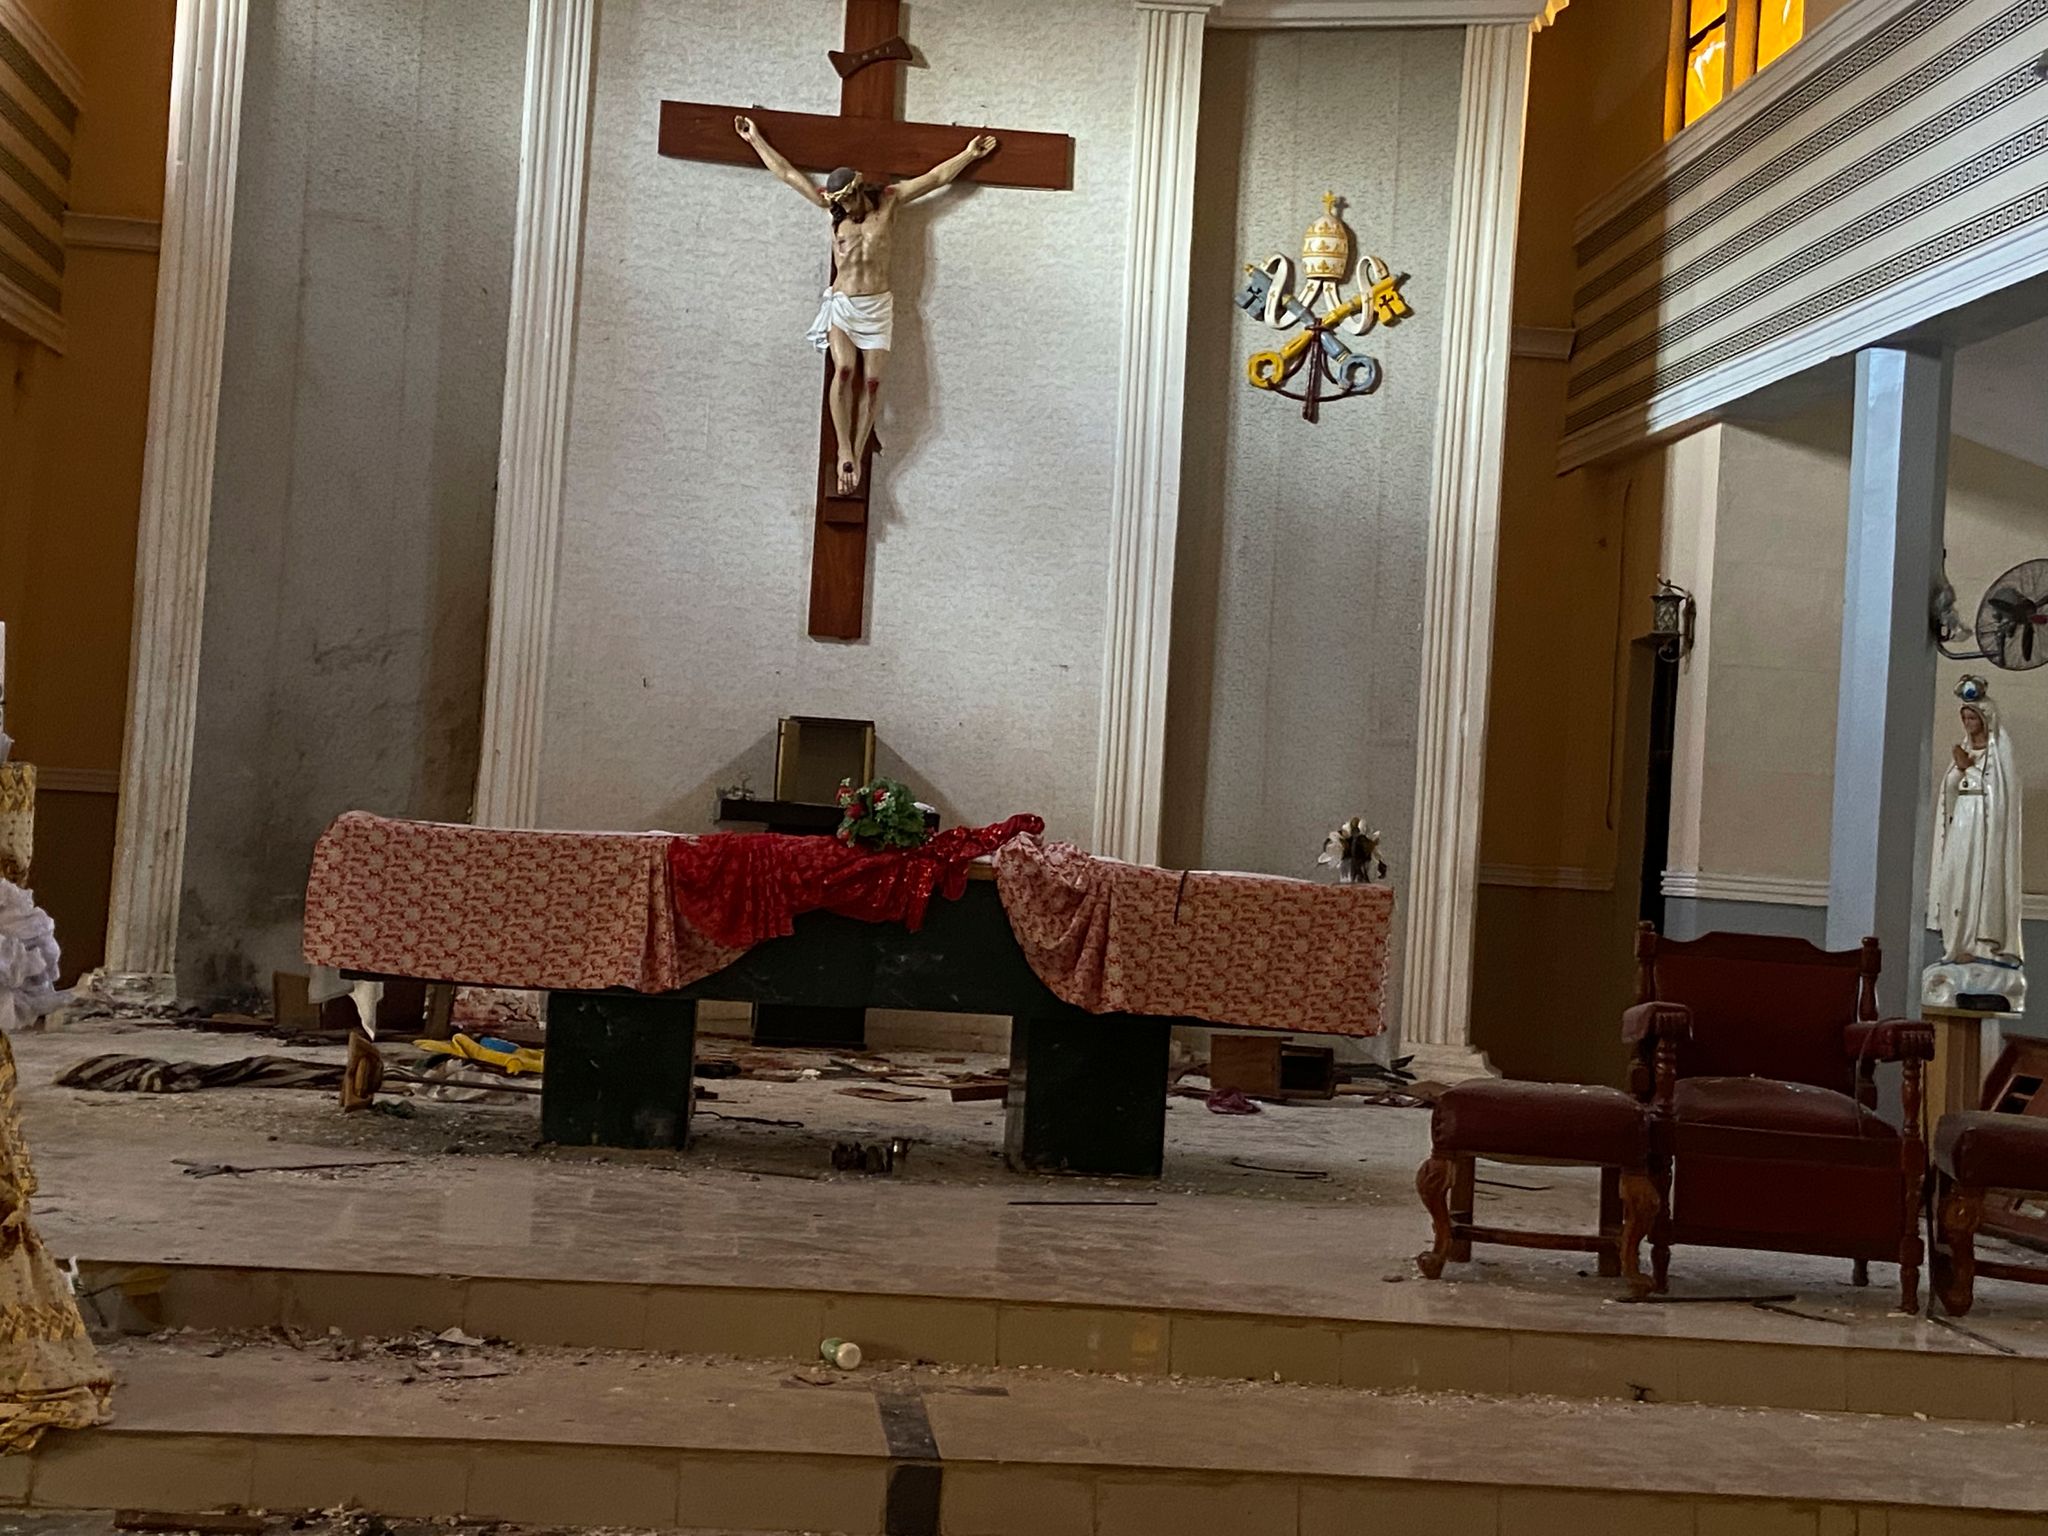 Massaker in Kirche: 100 Christen kaltblütig getötet